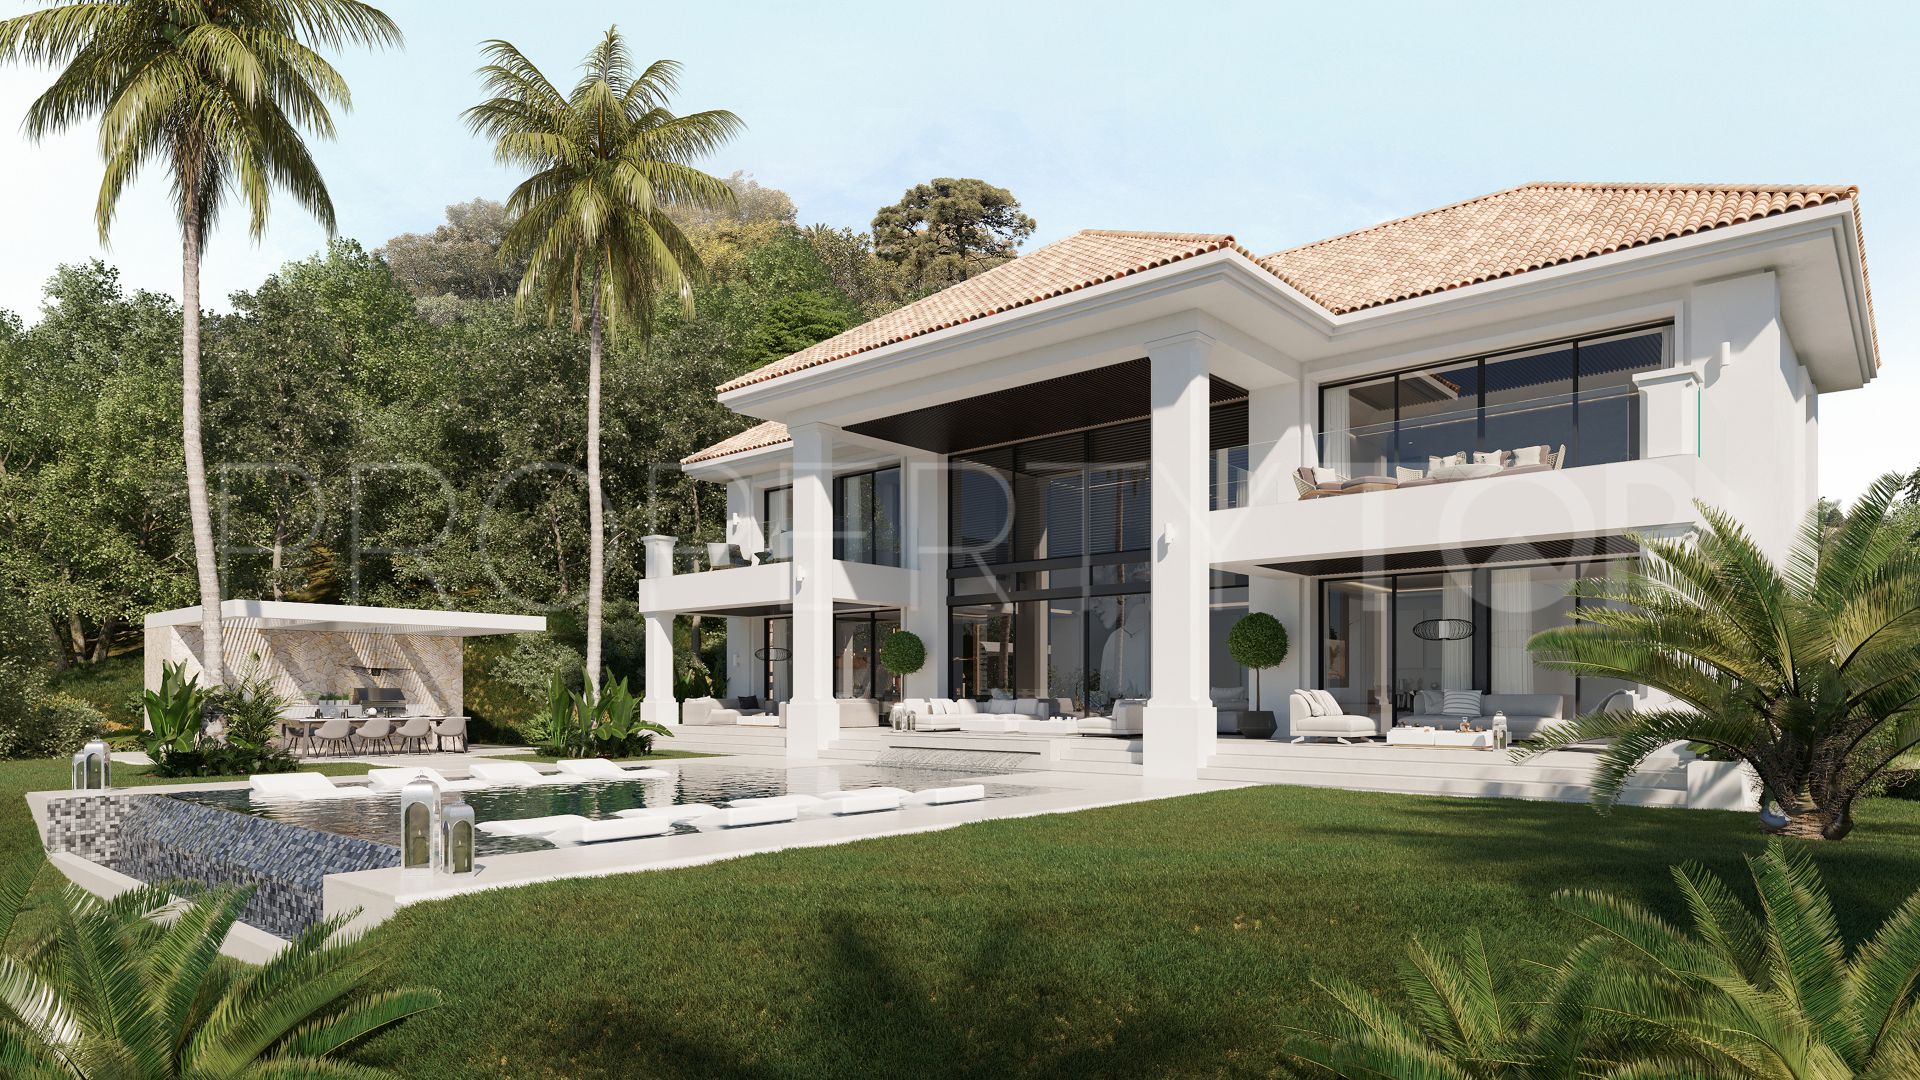 For sale villa with 6 bedrooms in El Madroñal